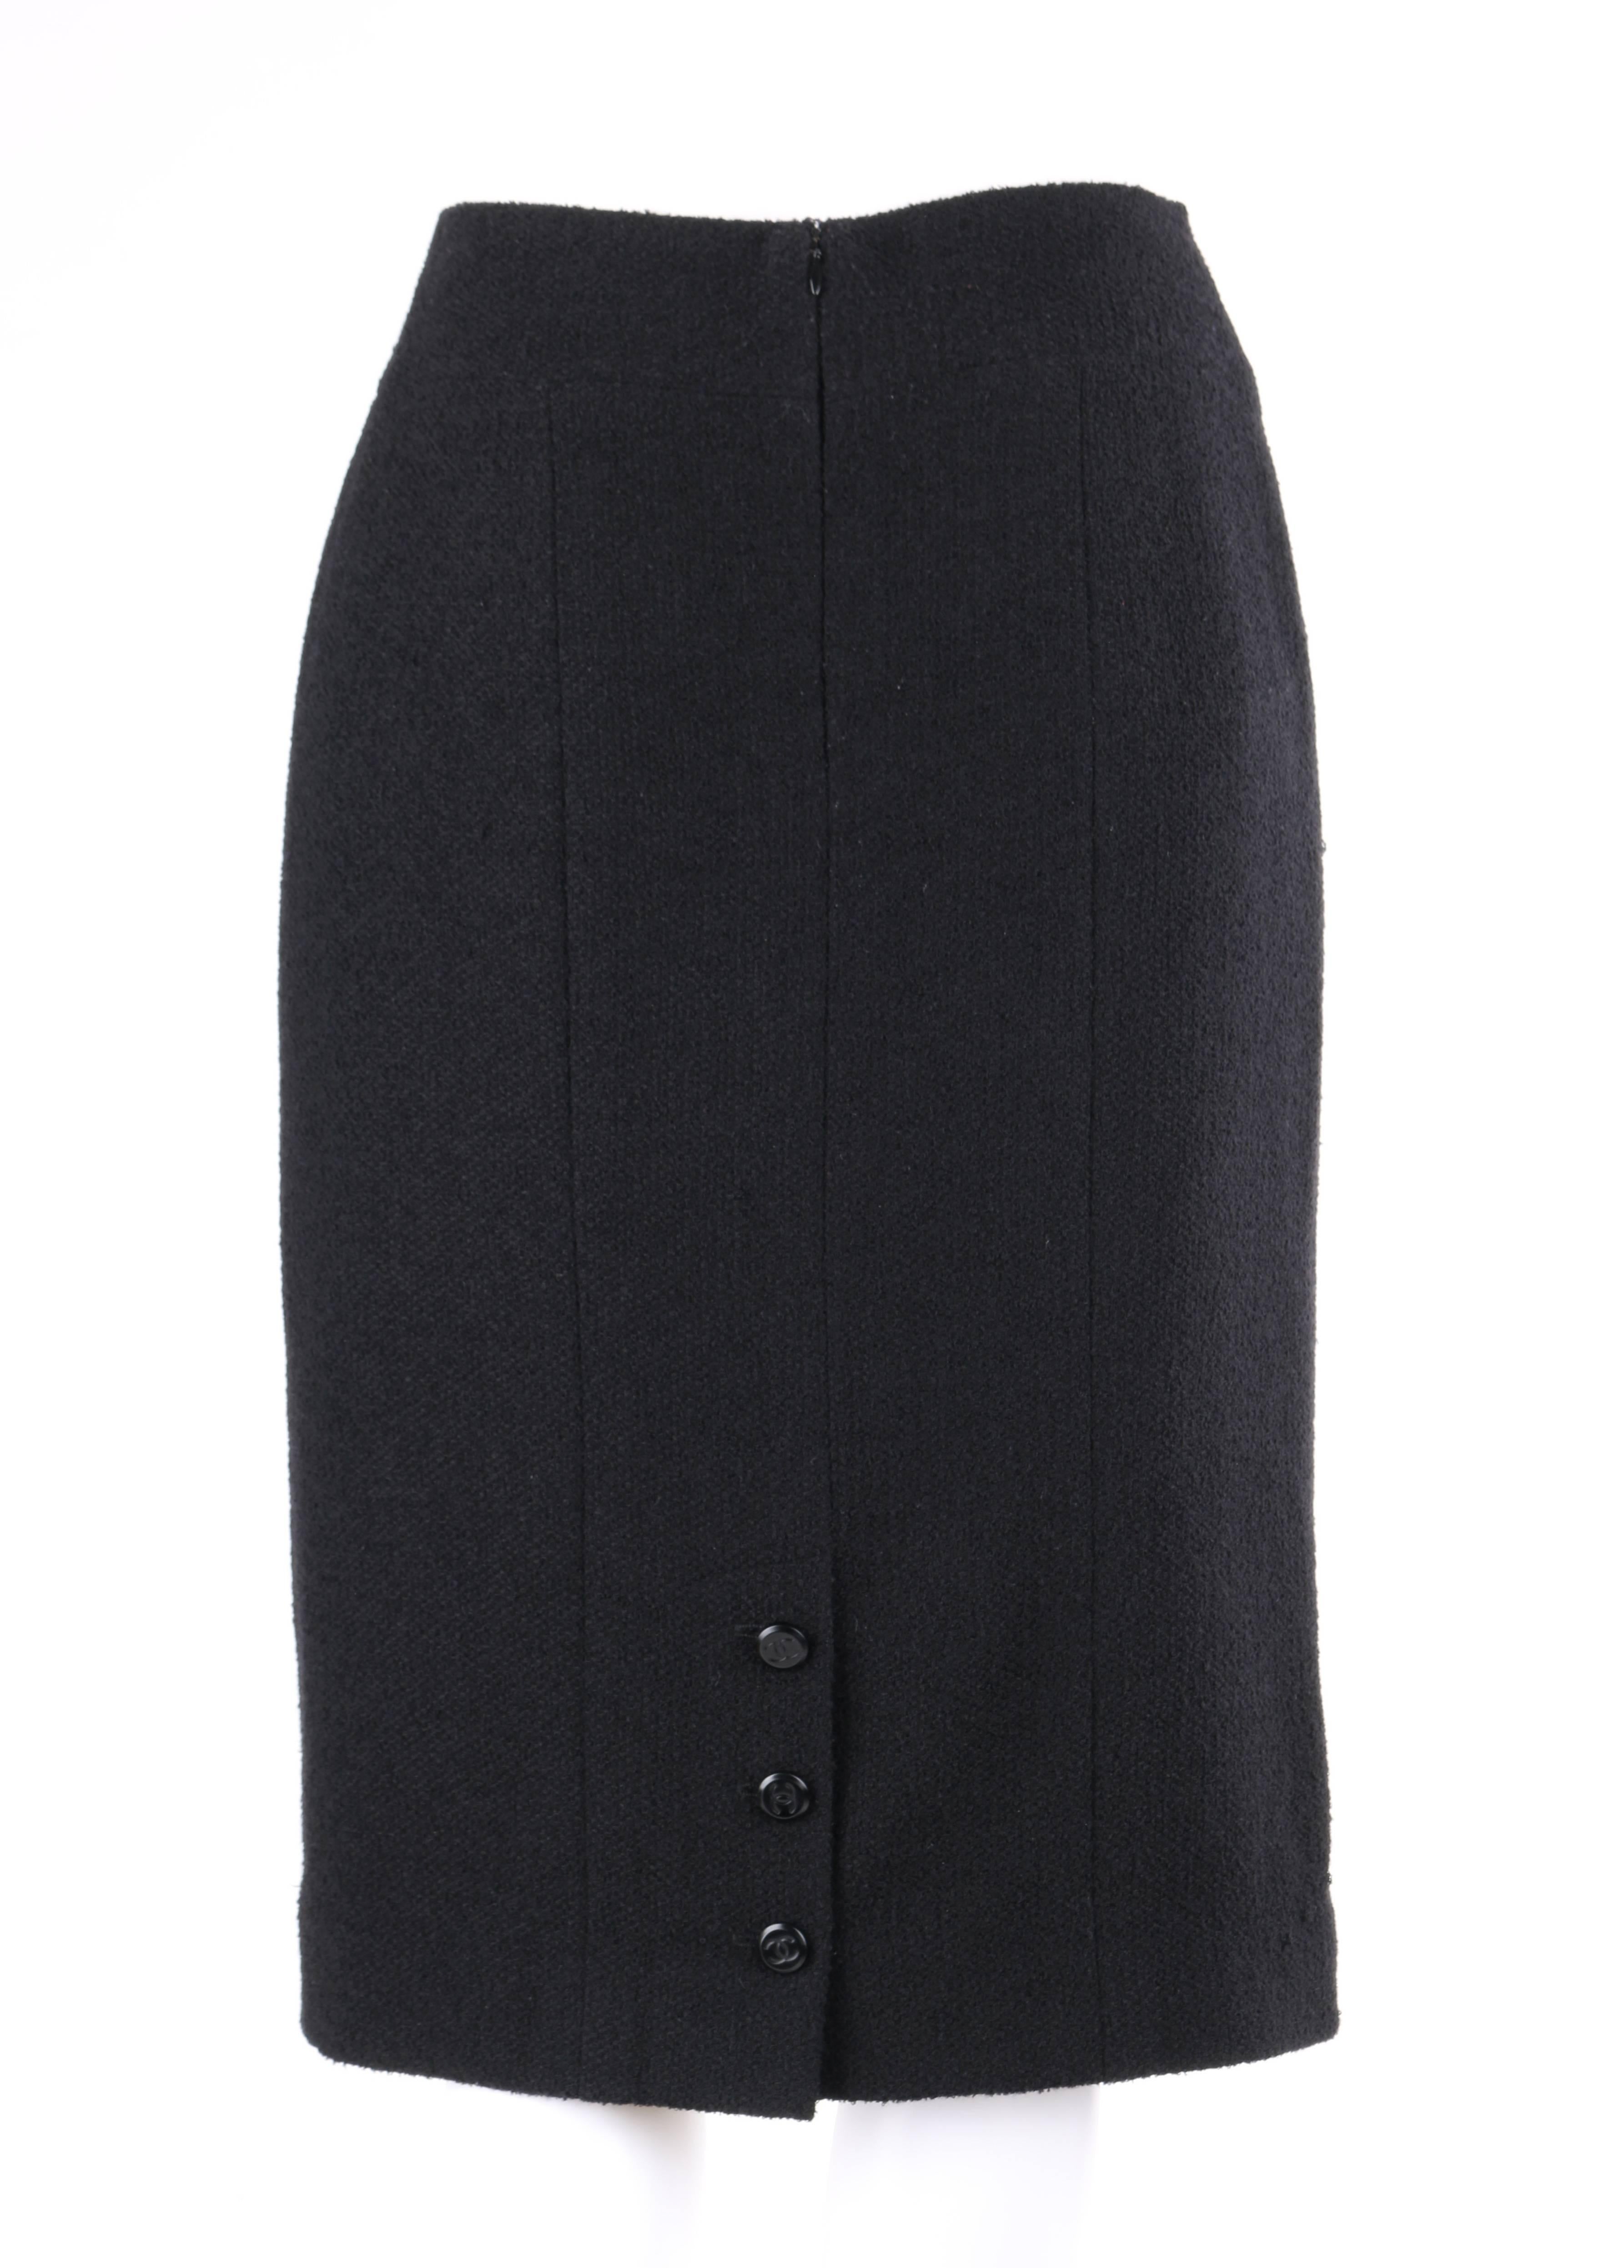 Women's CHANEL A/W 1998 2 Piece Classic Black Boucle Wool Blazer Pencil Skirt Suit Set